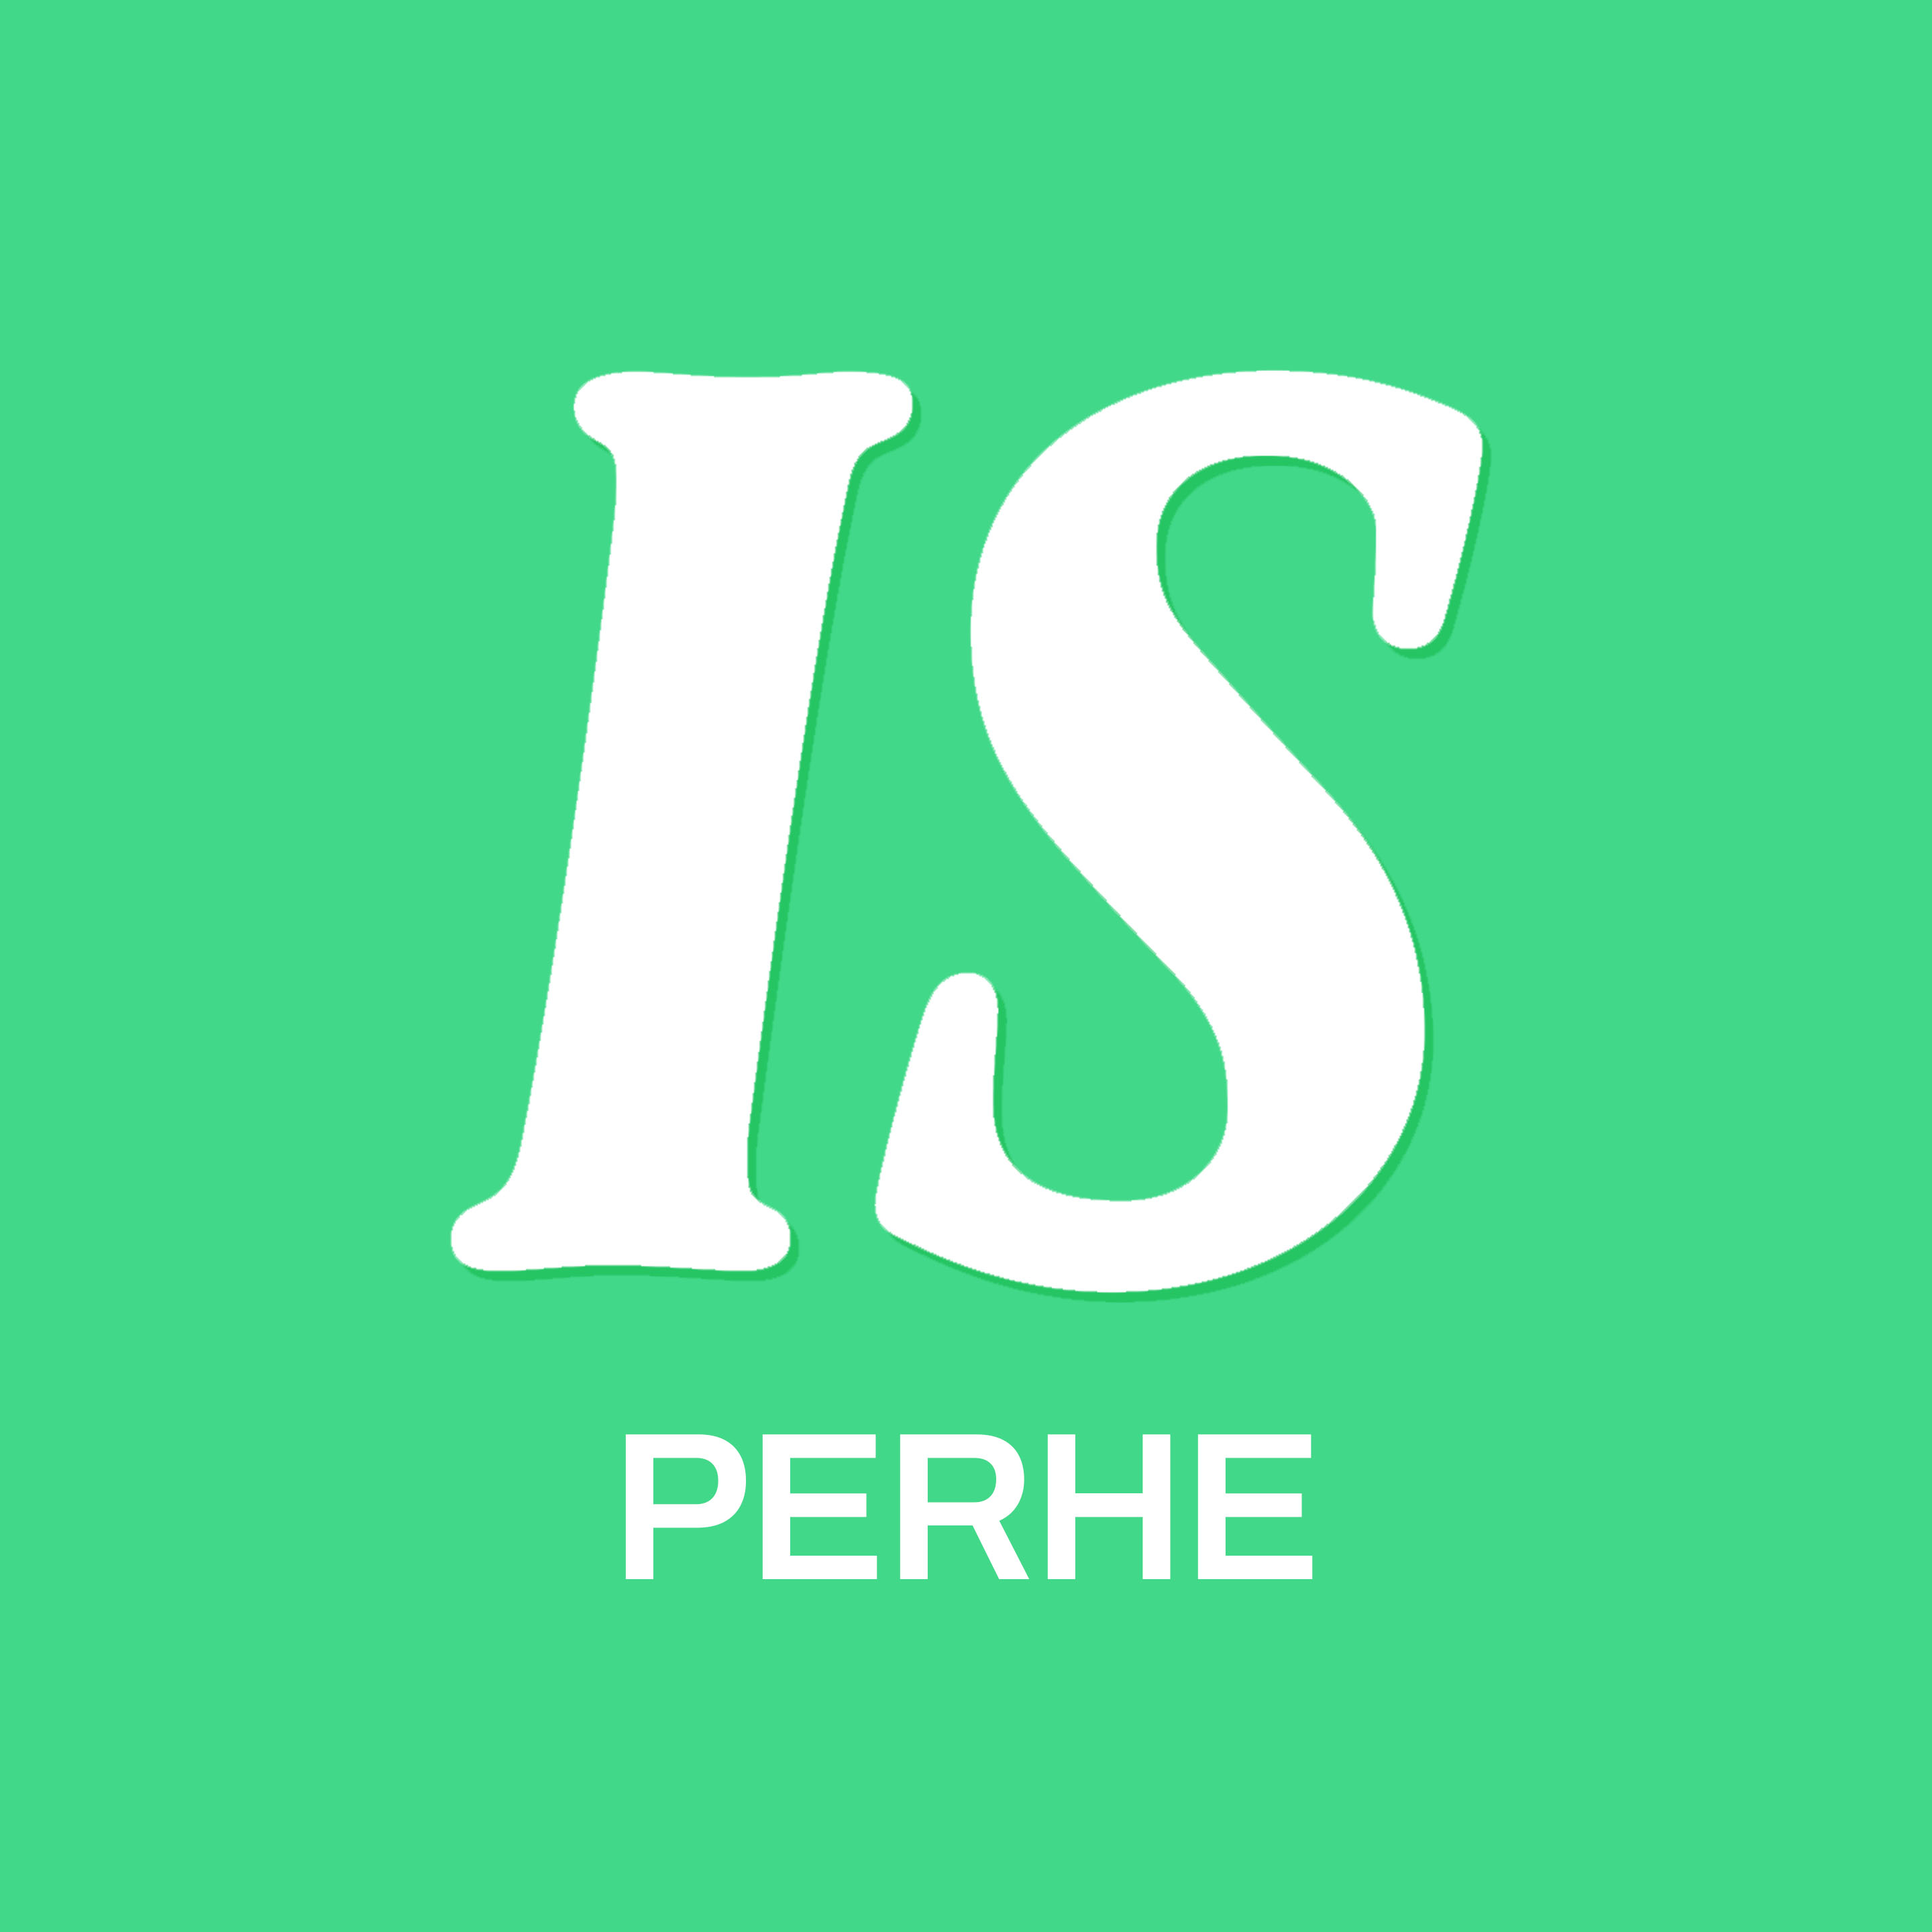 IS PERHE